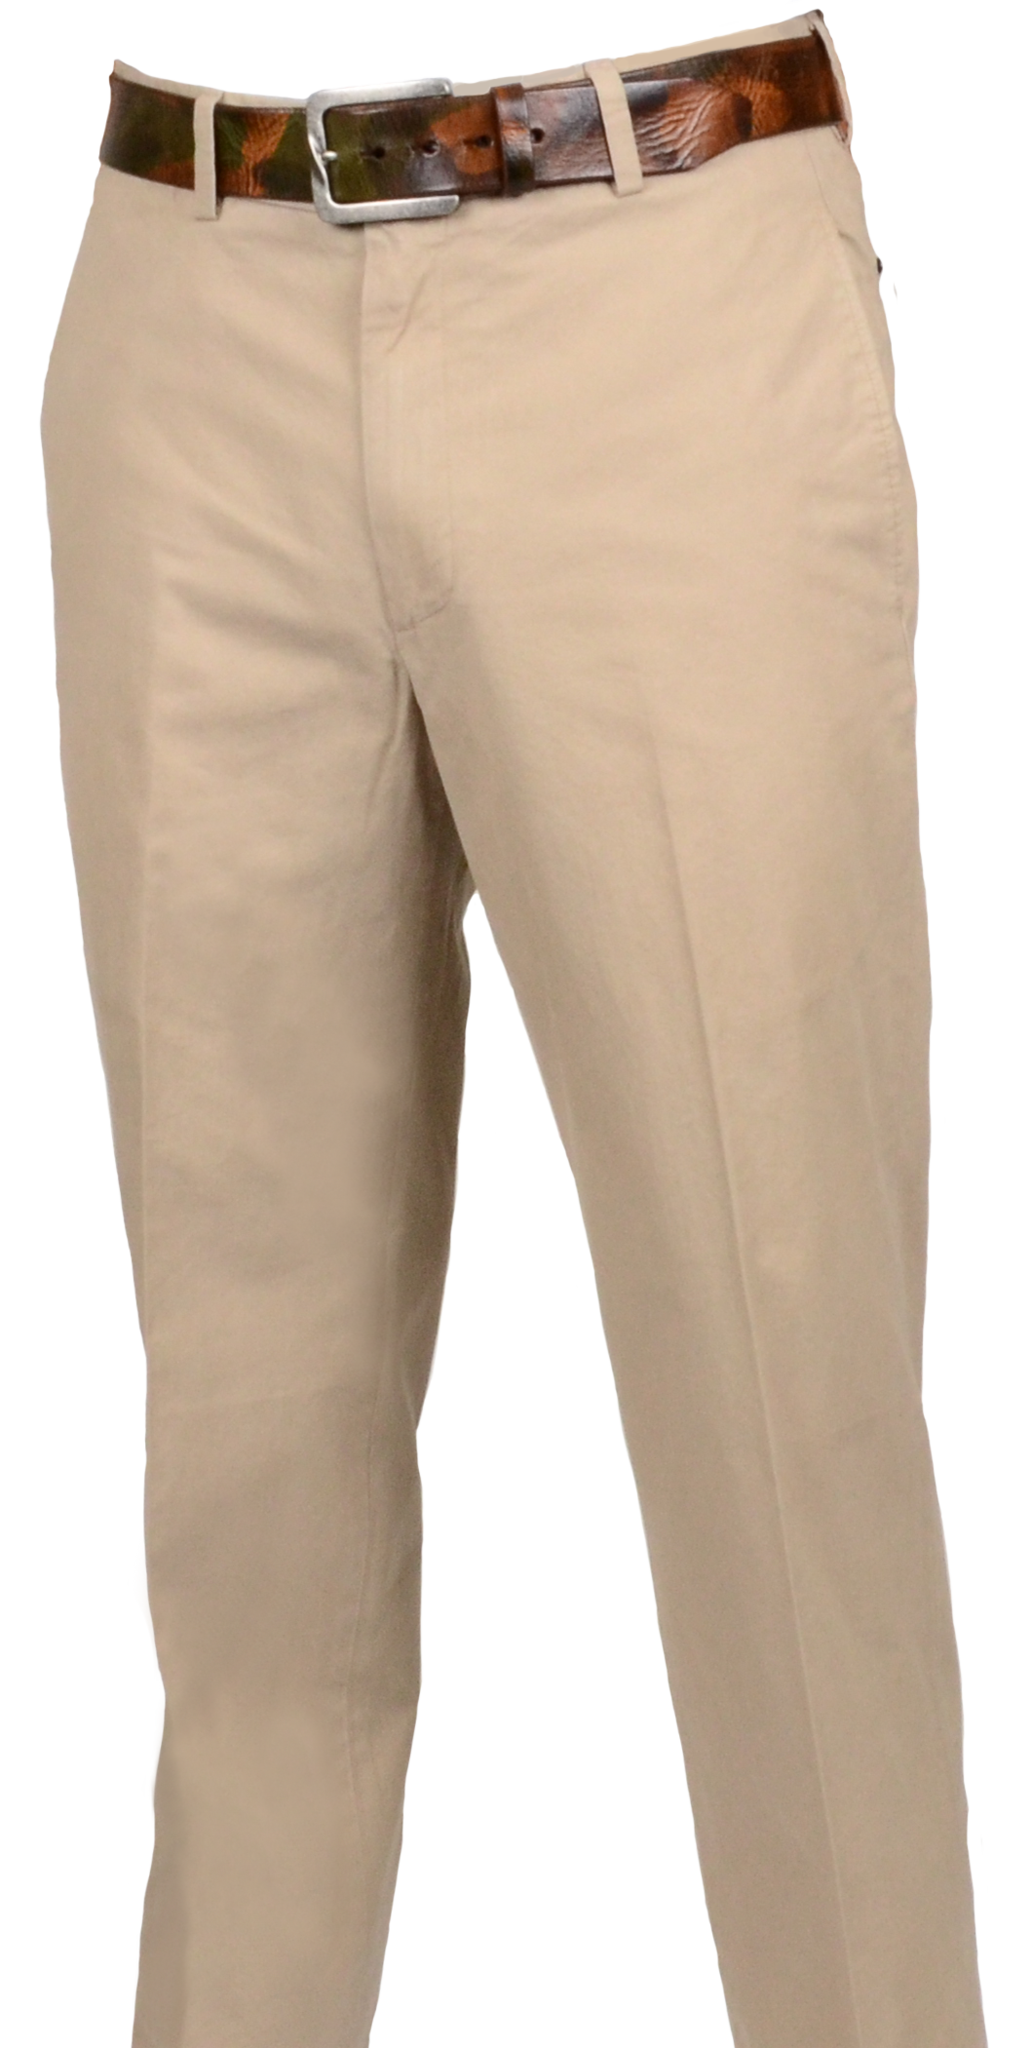 Kaki pantalon PNG Image